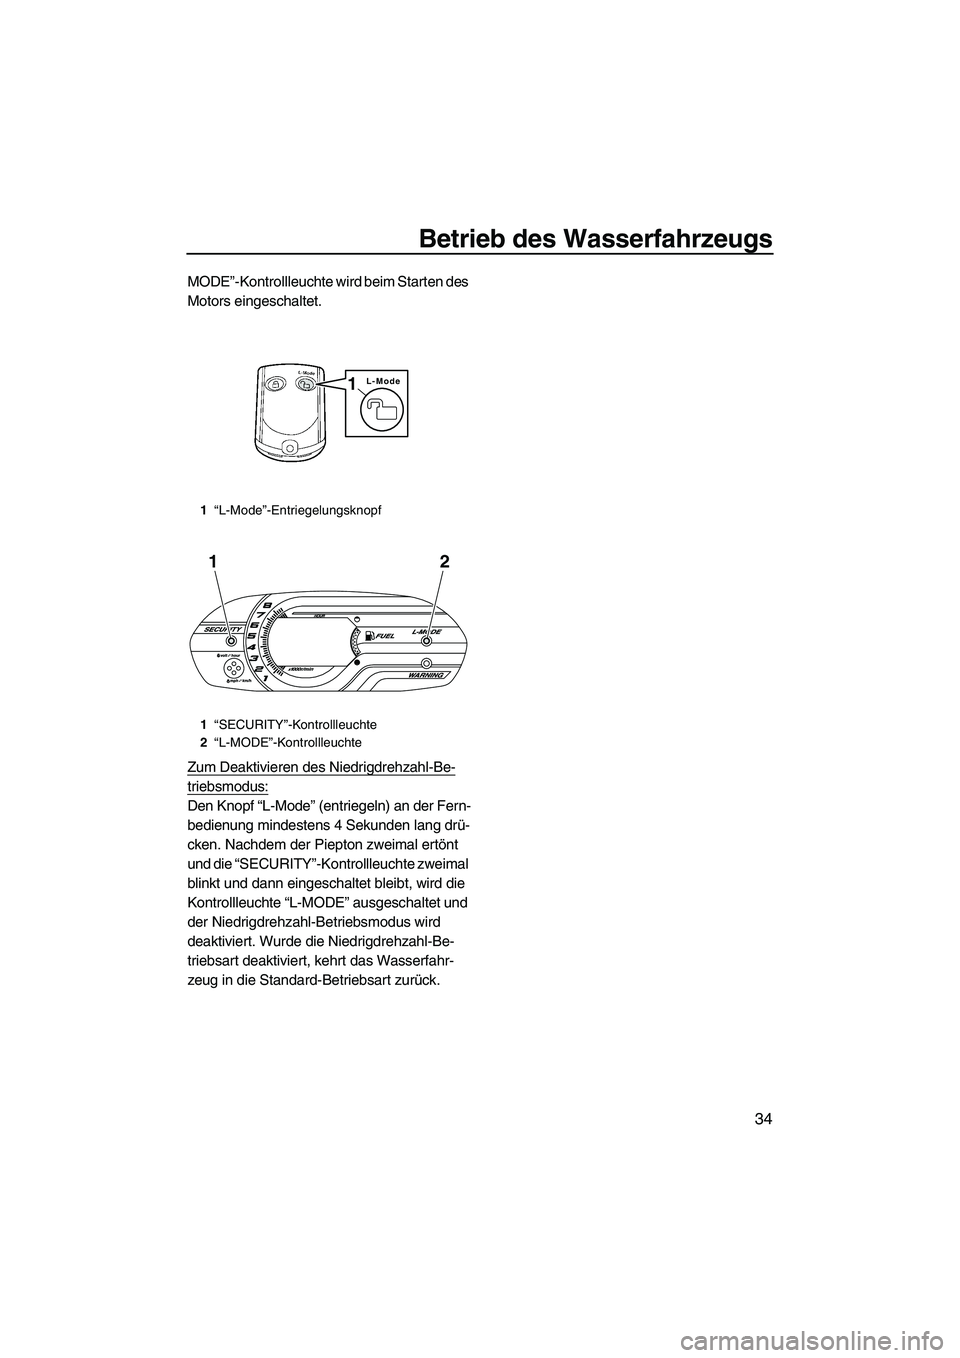 YAMAHA VX DELUXE 2013  Betriebsanleitungen (in German) Betrieb des Wasserfahrzeugs
34
MODE”-Kontrollleuchte wird beim Starten des 
Motors eingeschaltet.
Zum Deaktivieren des Niedrigdrehzahl-Be-
triebsmodus:
Den Knopf “L-Mode” (entriegeln) an der Fer